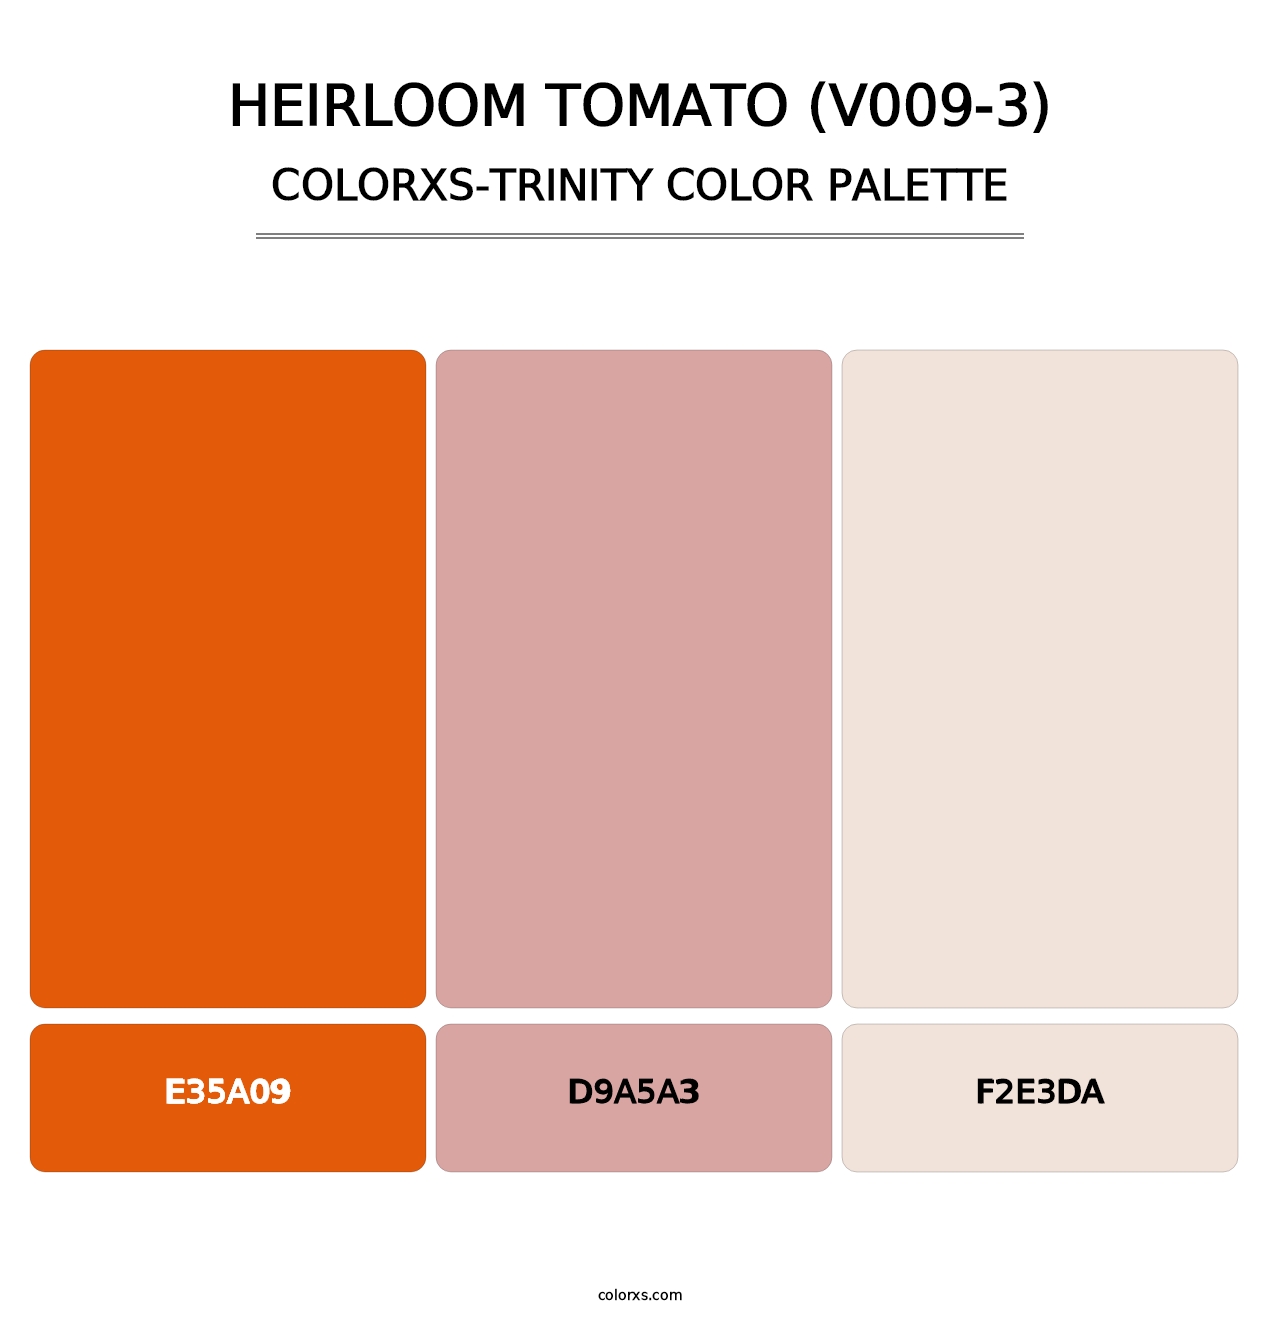 Heirloom Tomato (V009-3) - Colorxs Trinity Palette